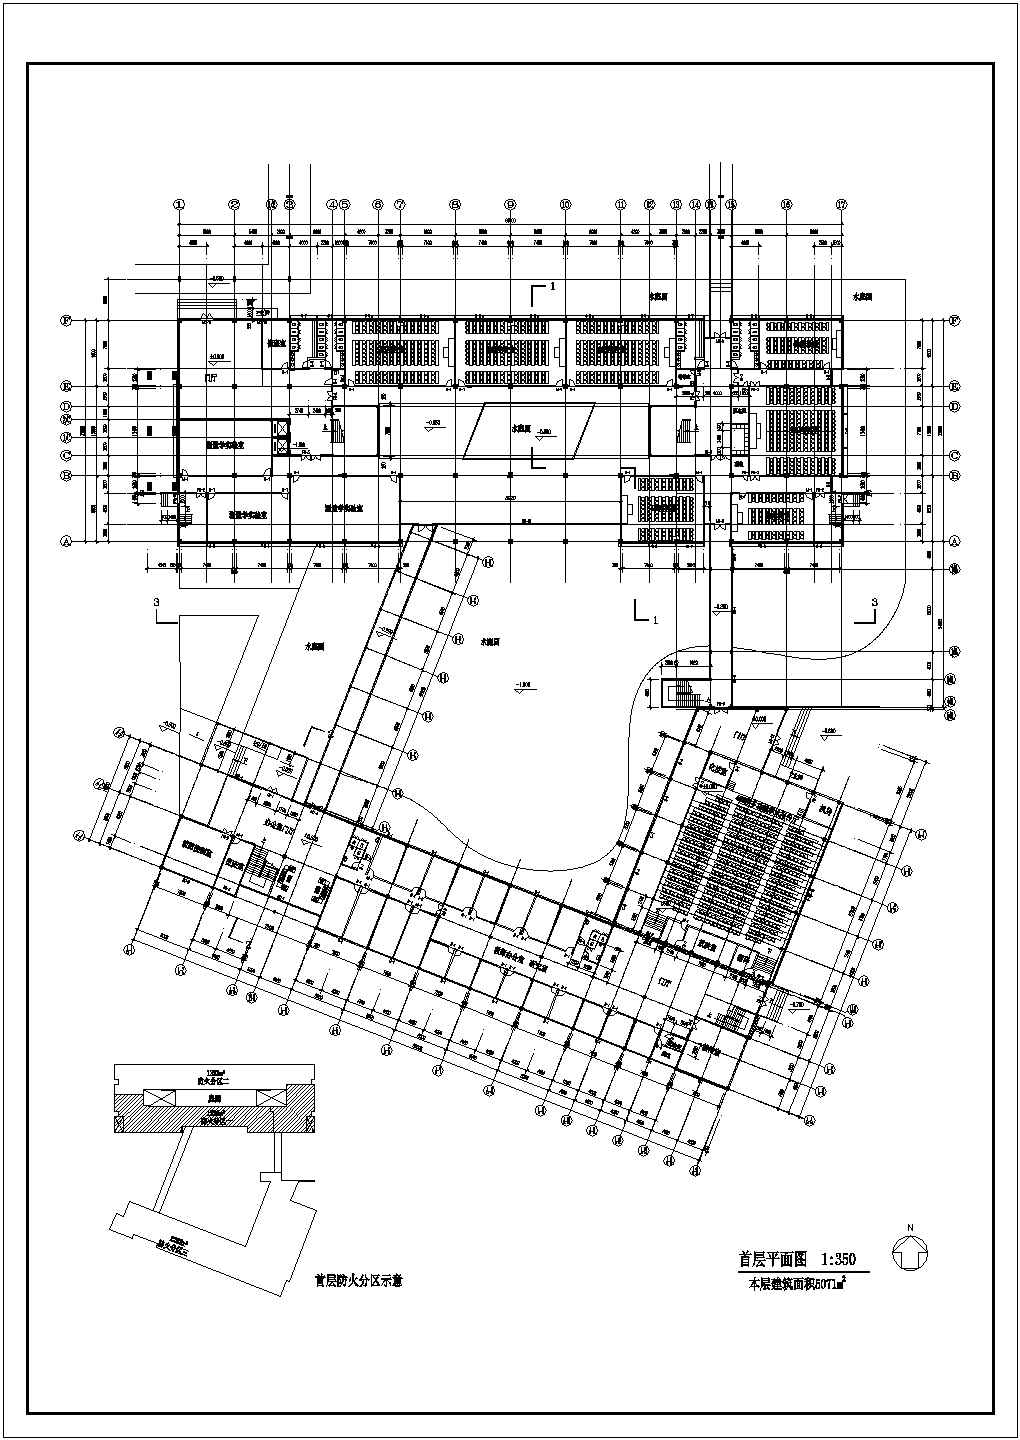 人文馆社科楼建筑设计方案及施工全套CAD图